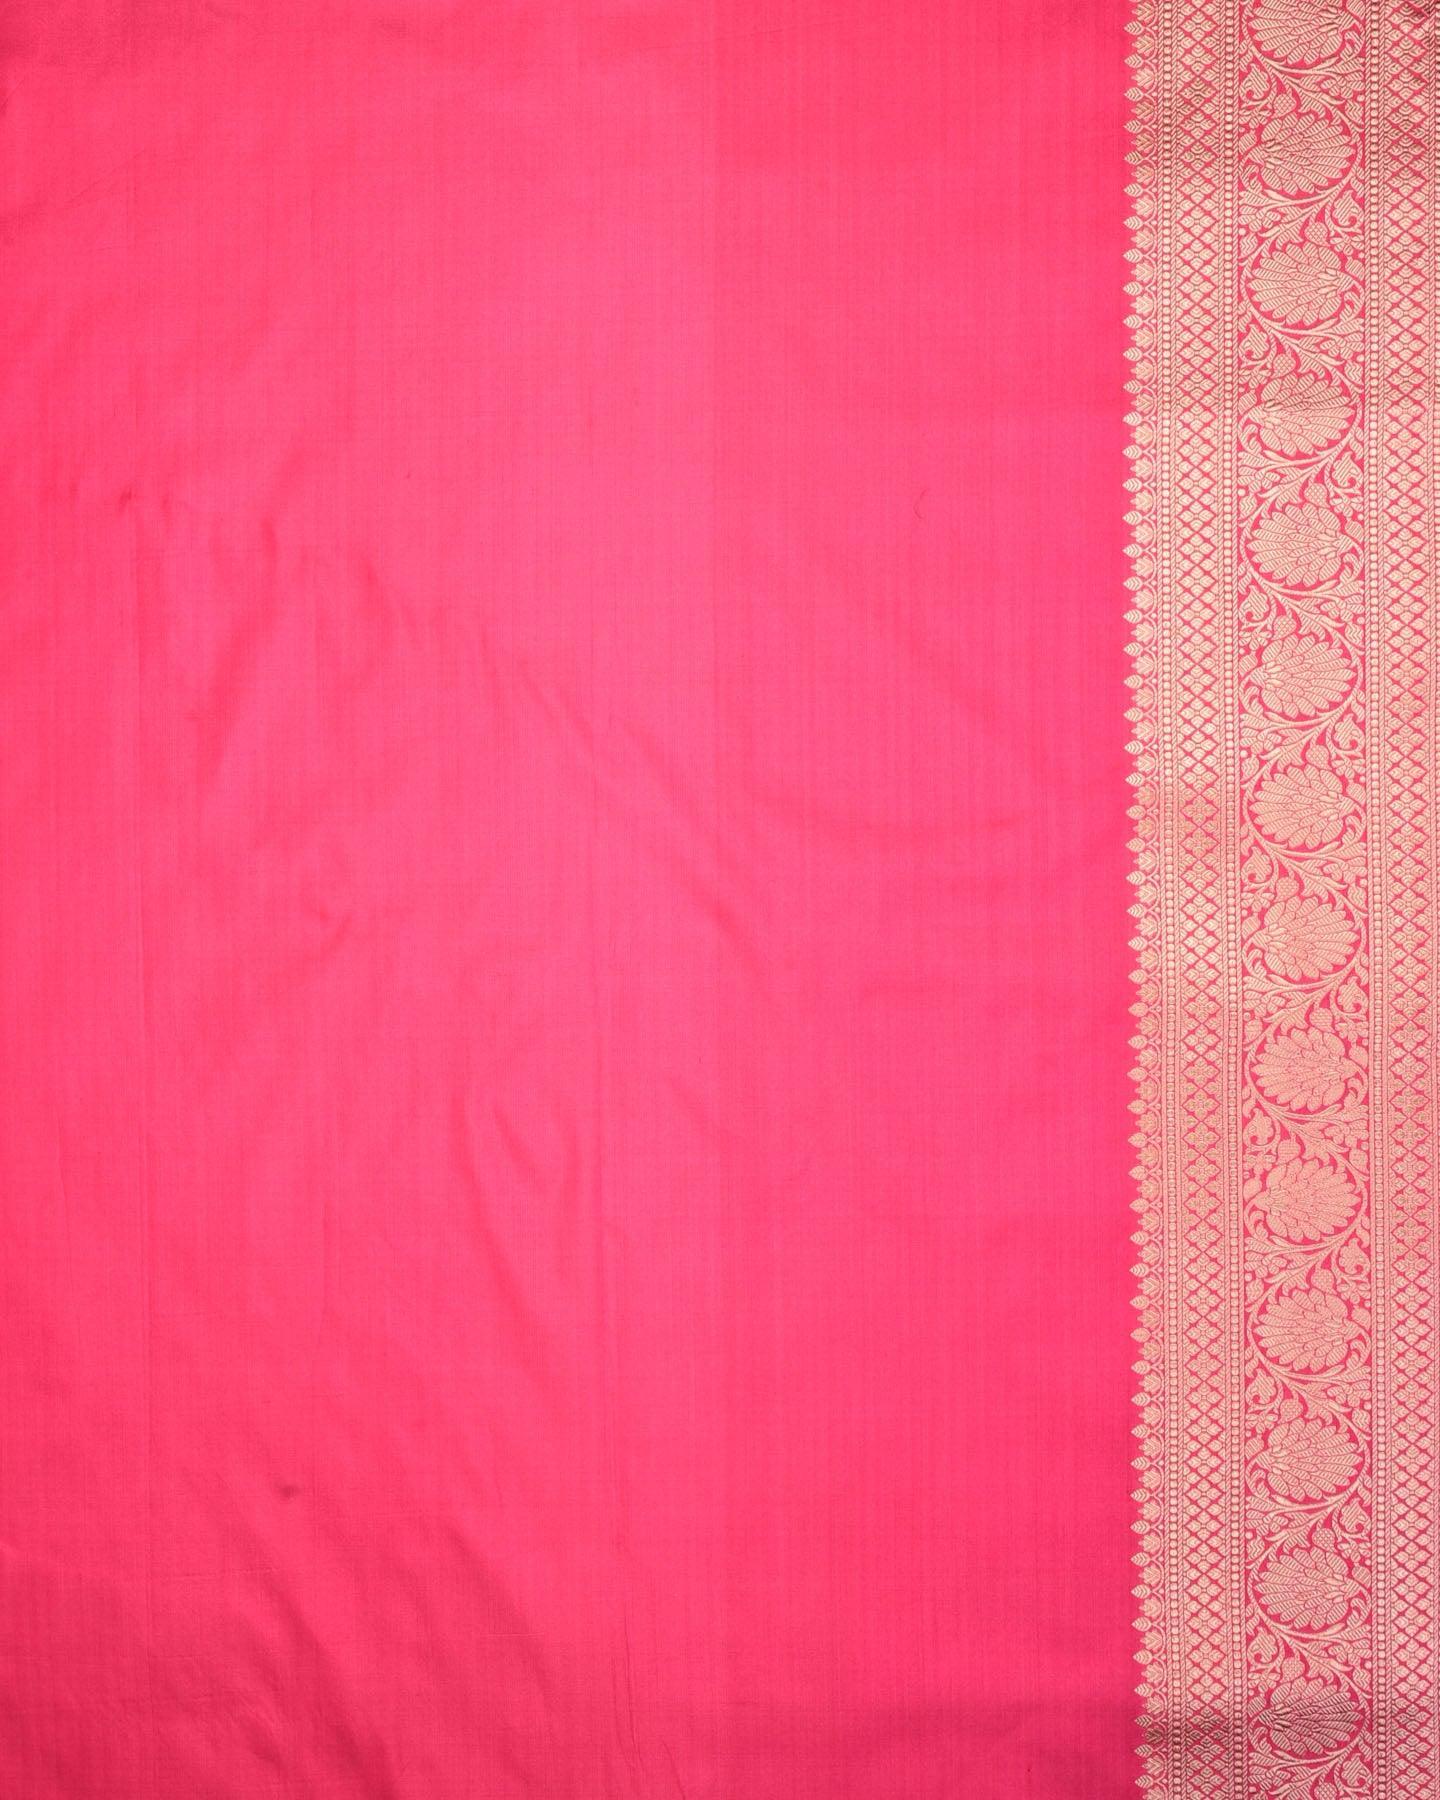 Flamingo Pink Banarasi Buta Cutwork Brocade Handwoven Katan Silk Saree - By HolyWeaves, Benares